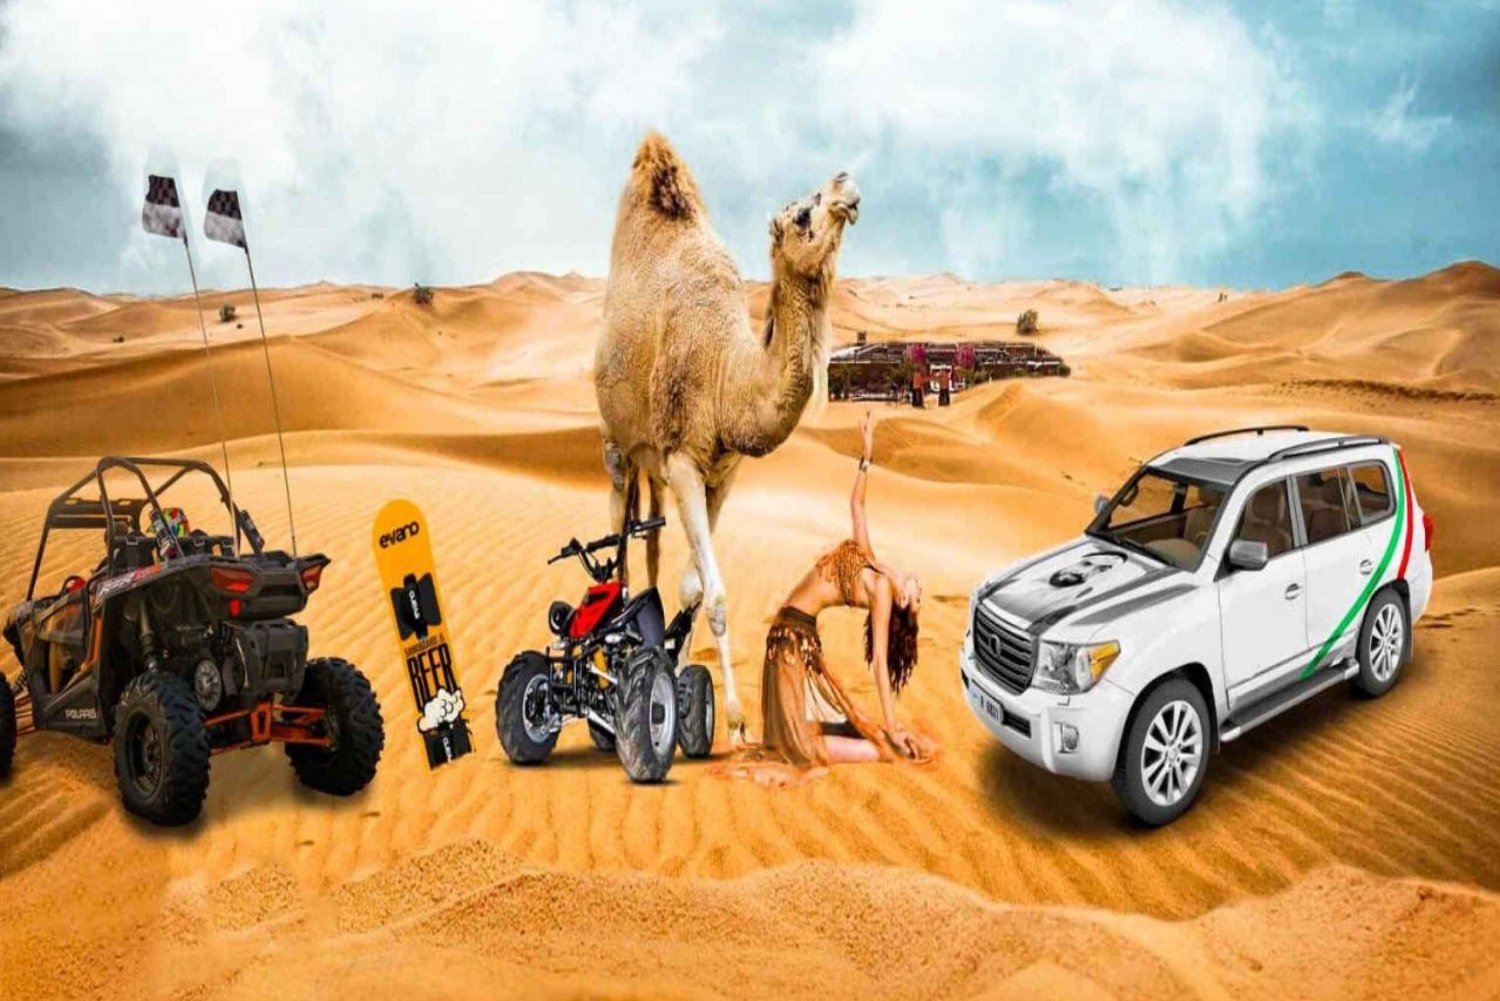 Desert Safaris In Dubai, Sandboard, BBQ, Camel Ride & Shows